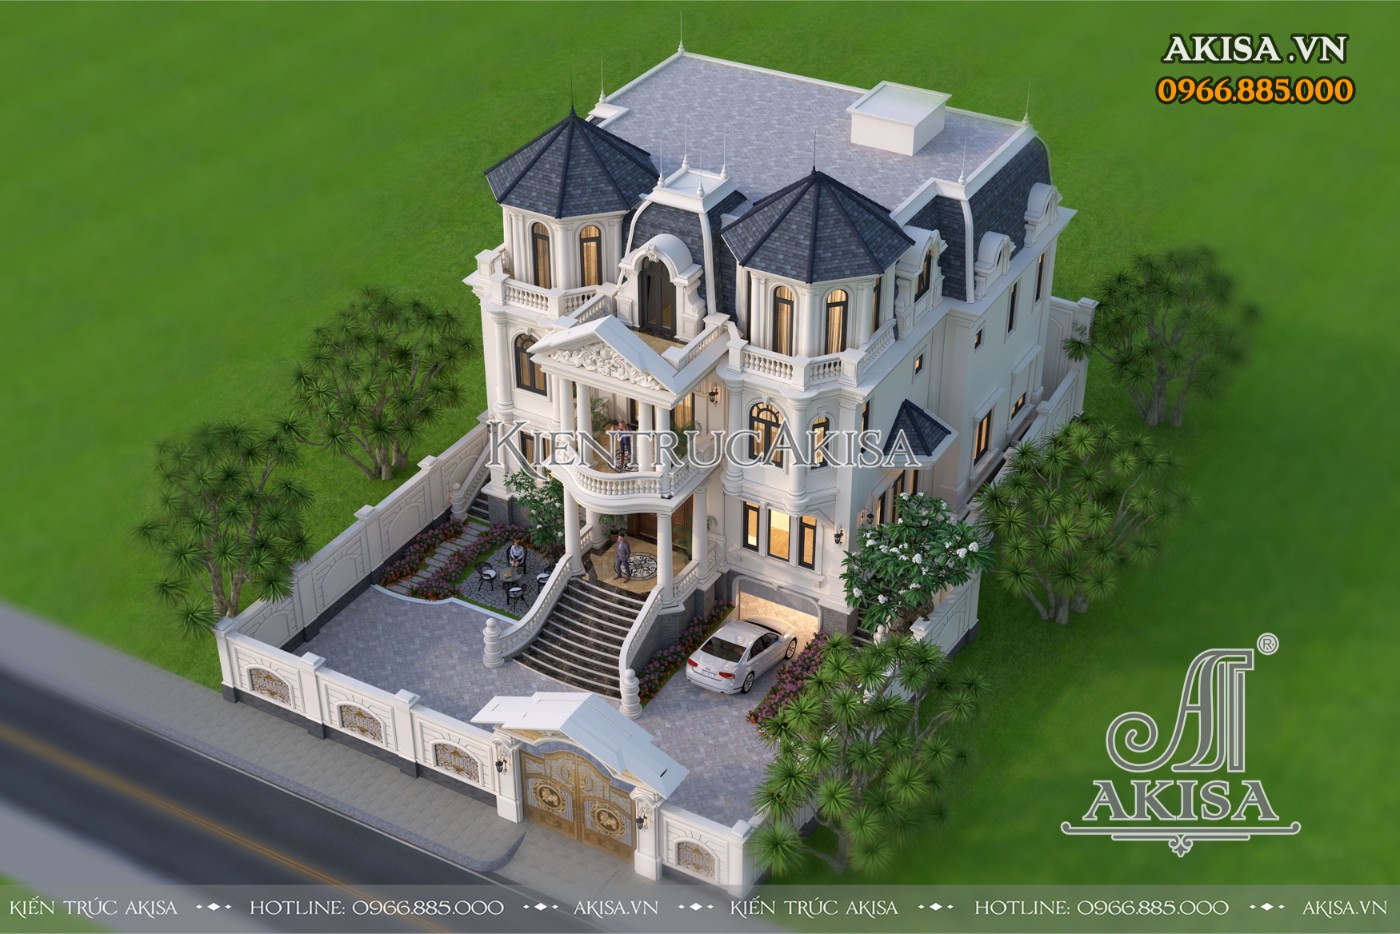 Tổng thể mẫu thiết kế lâu đài dinh thự kiểu Pháp 3 tầng nguy nga, tráng lệ